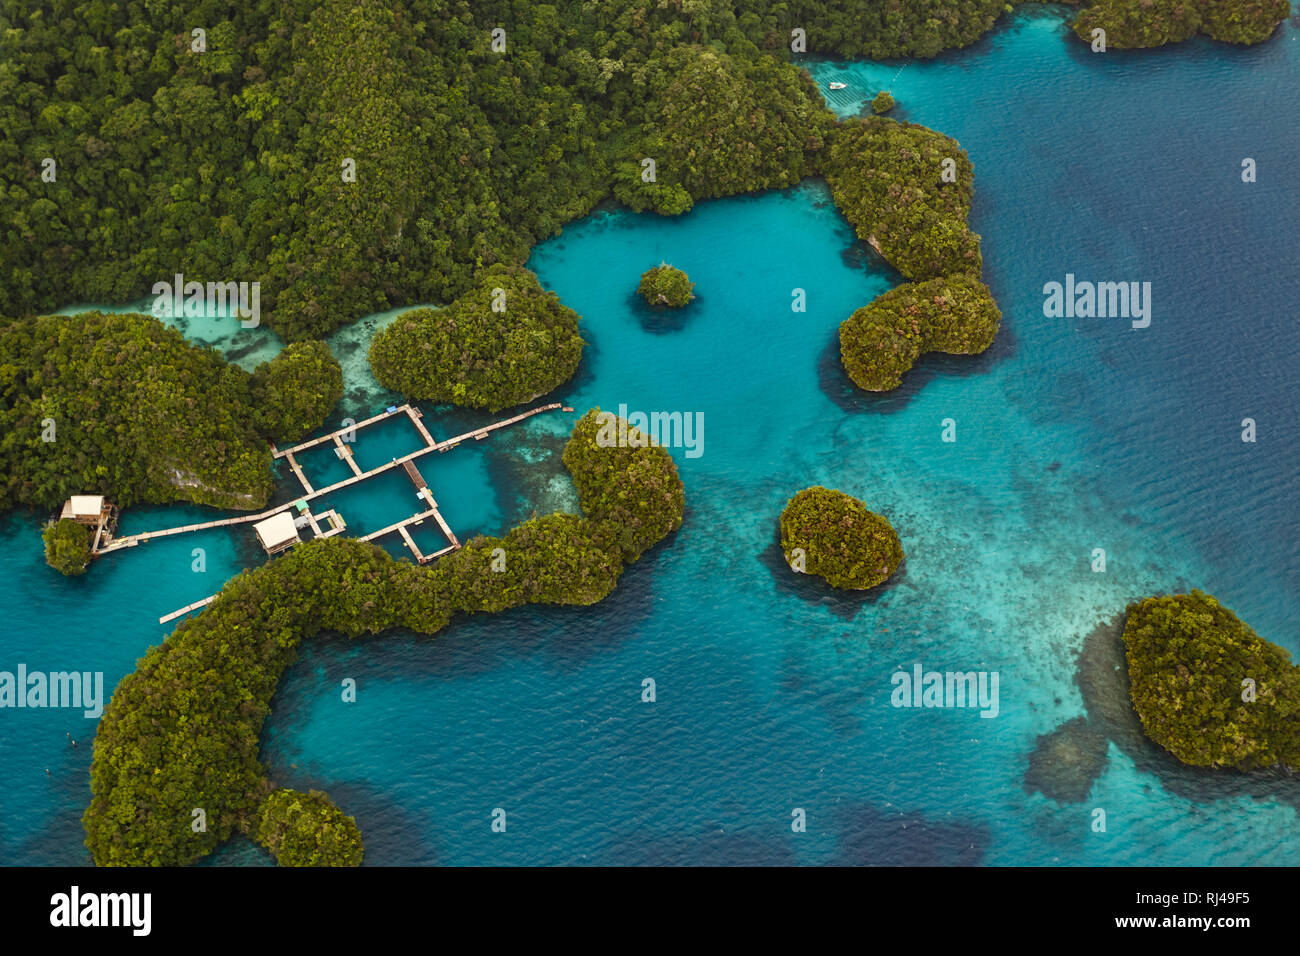 Luftaufnahme von Square Holz Docks in Gruppe von kleinen südpazifischen Inseln mit üppiger Vegetation und Korallenriffe in türkis Meer bedeckt Stockfoto